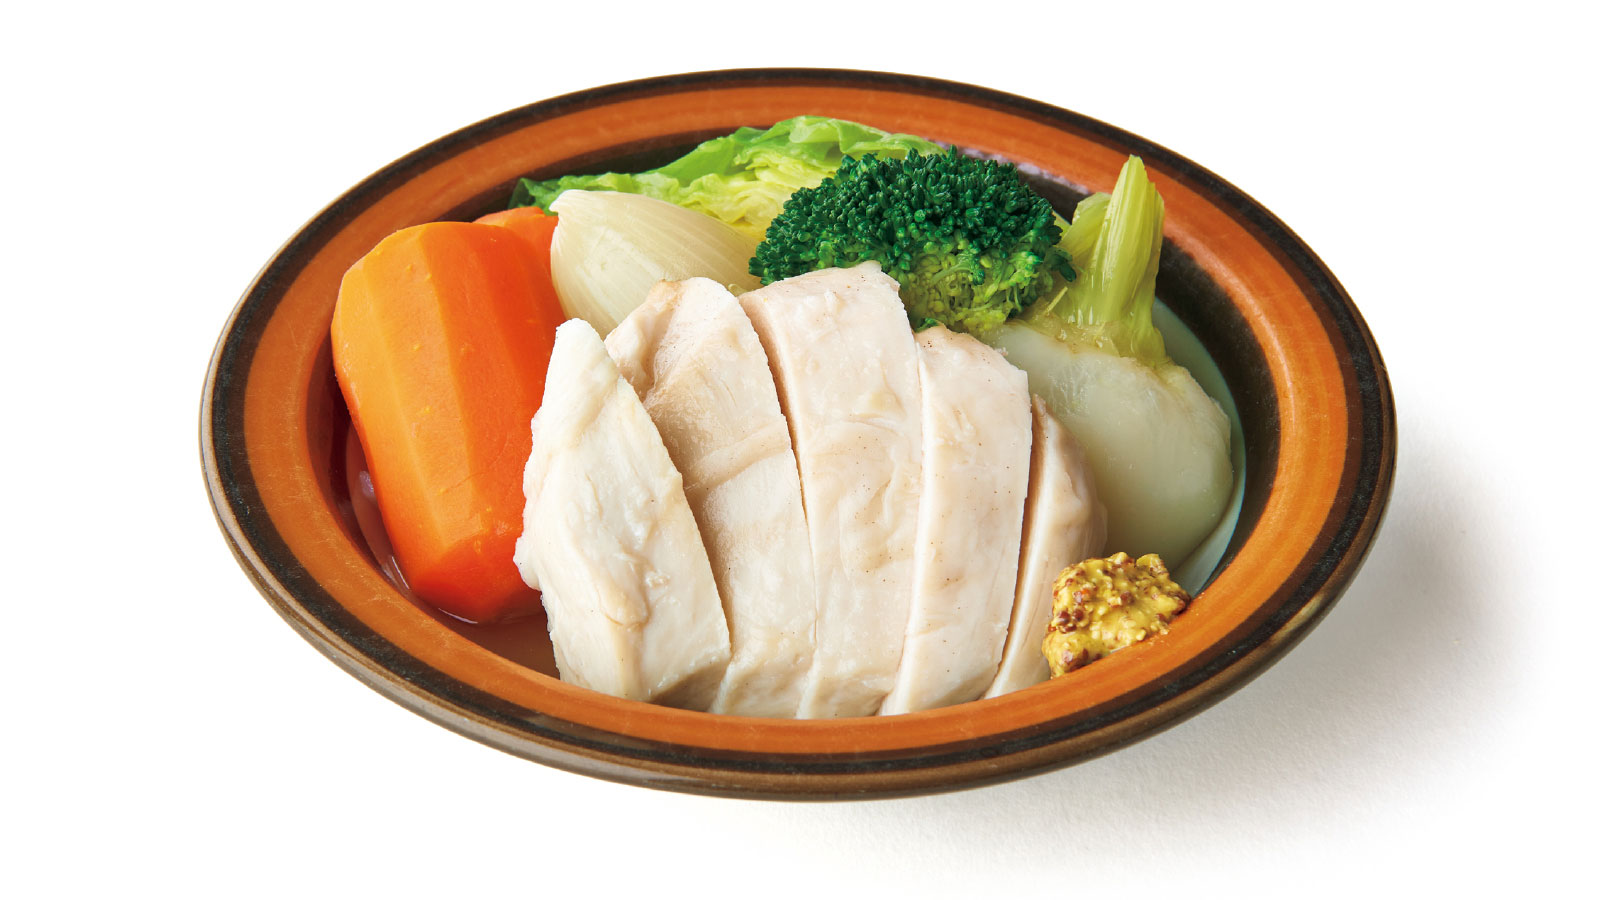 腹を割る 食事のルール メニュー 鶏胸肉と野菜のポトフ